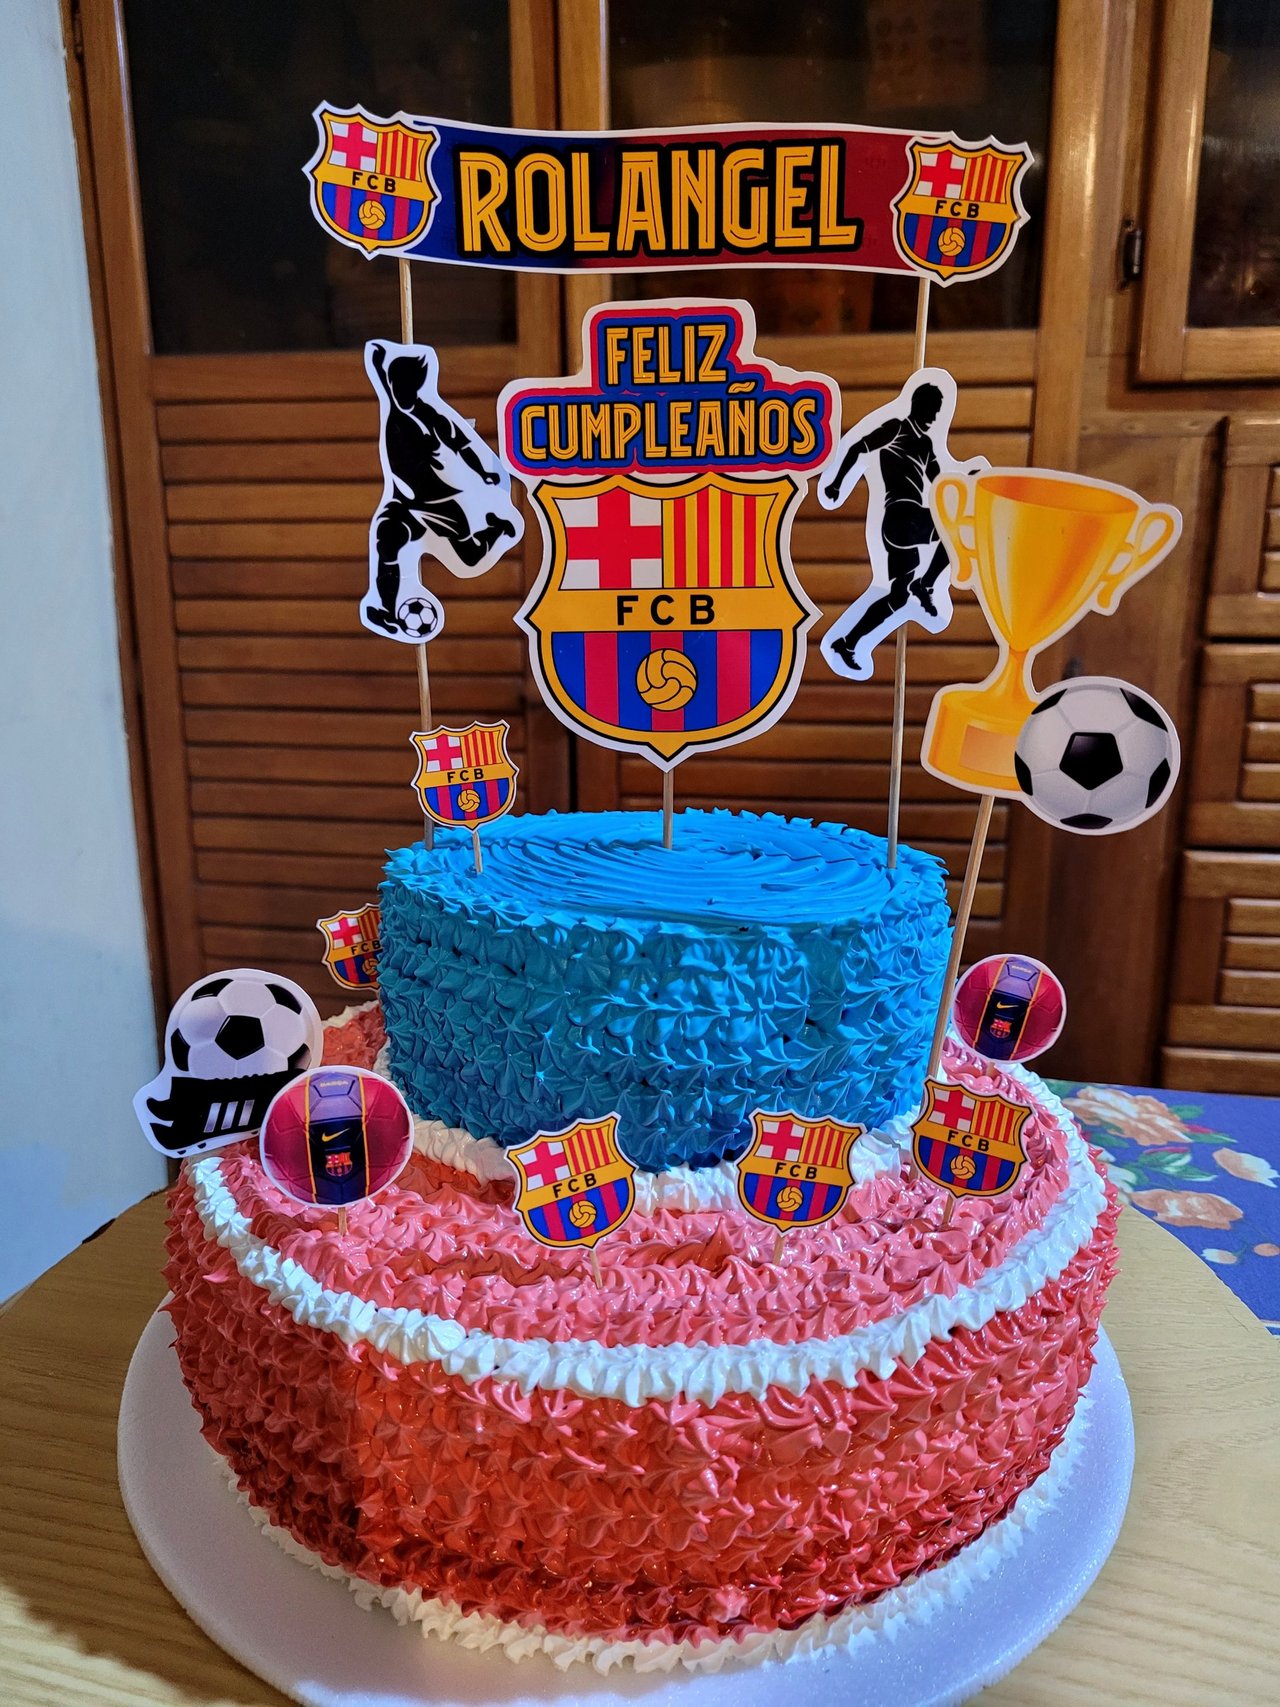 Recipe and decoration of a FC Barcelona cake - Receta y decoración de un  pastel de la FC Barcelona. ?⚽? | PeakD